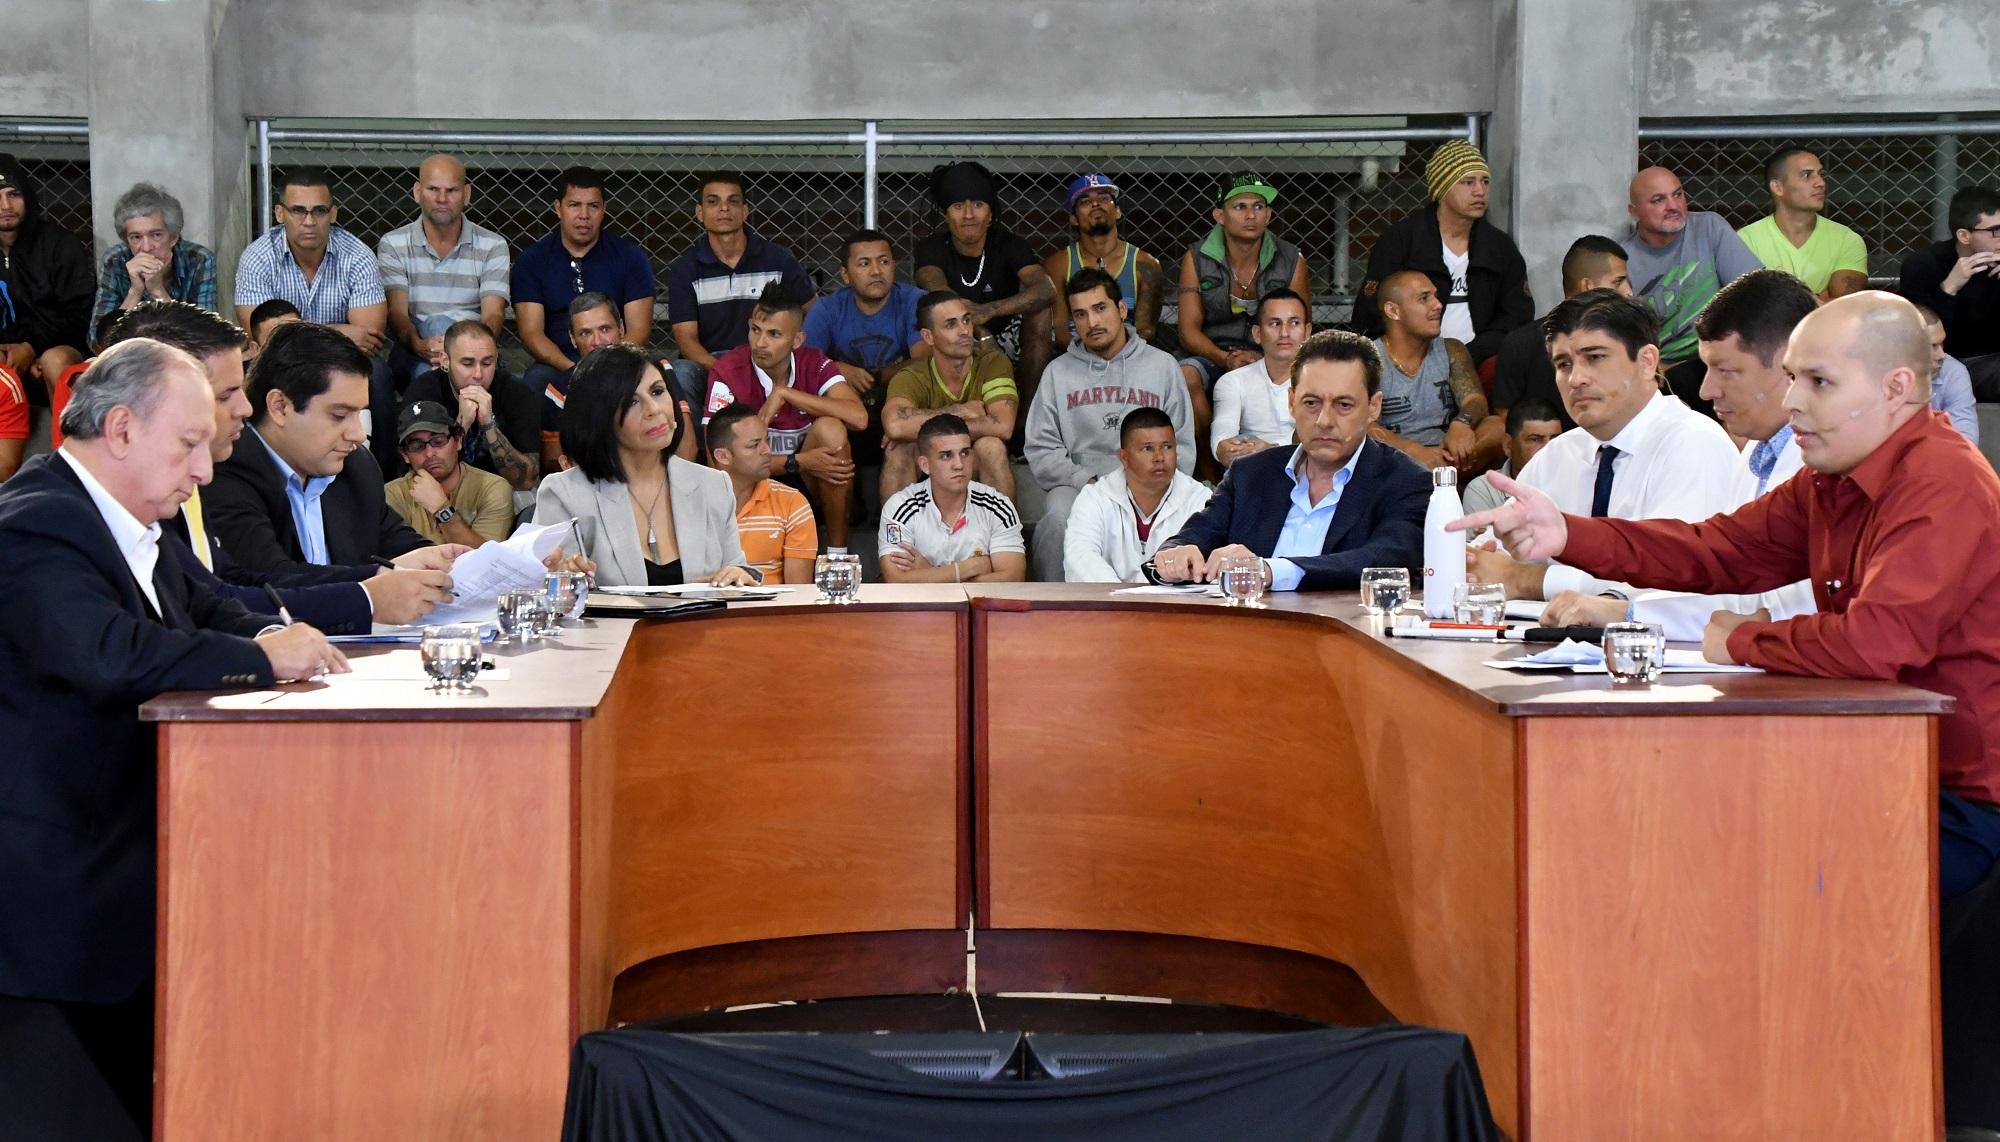 Siete candidatos a la presidencia de Costa Rica debaten en La Reforma, la cárcel más grande del país. El público estaba integrado por privados de libertad. Foto Ezequiel Becerra (AFP).